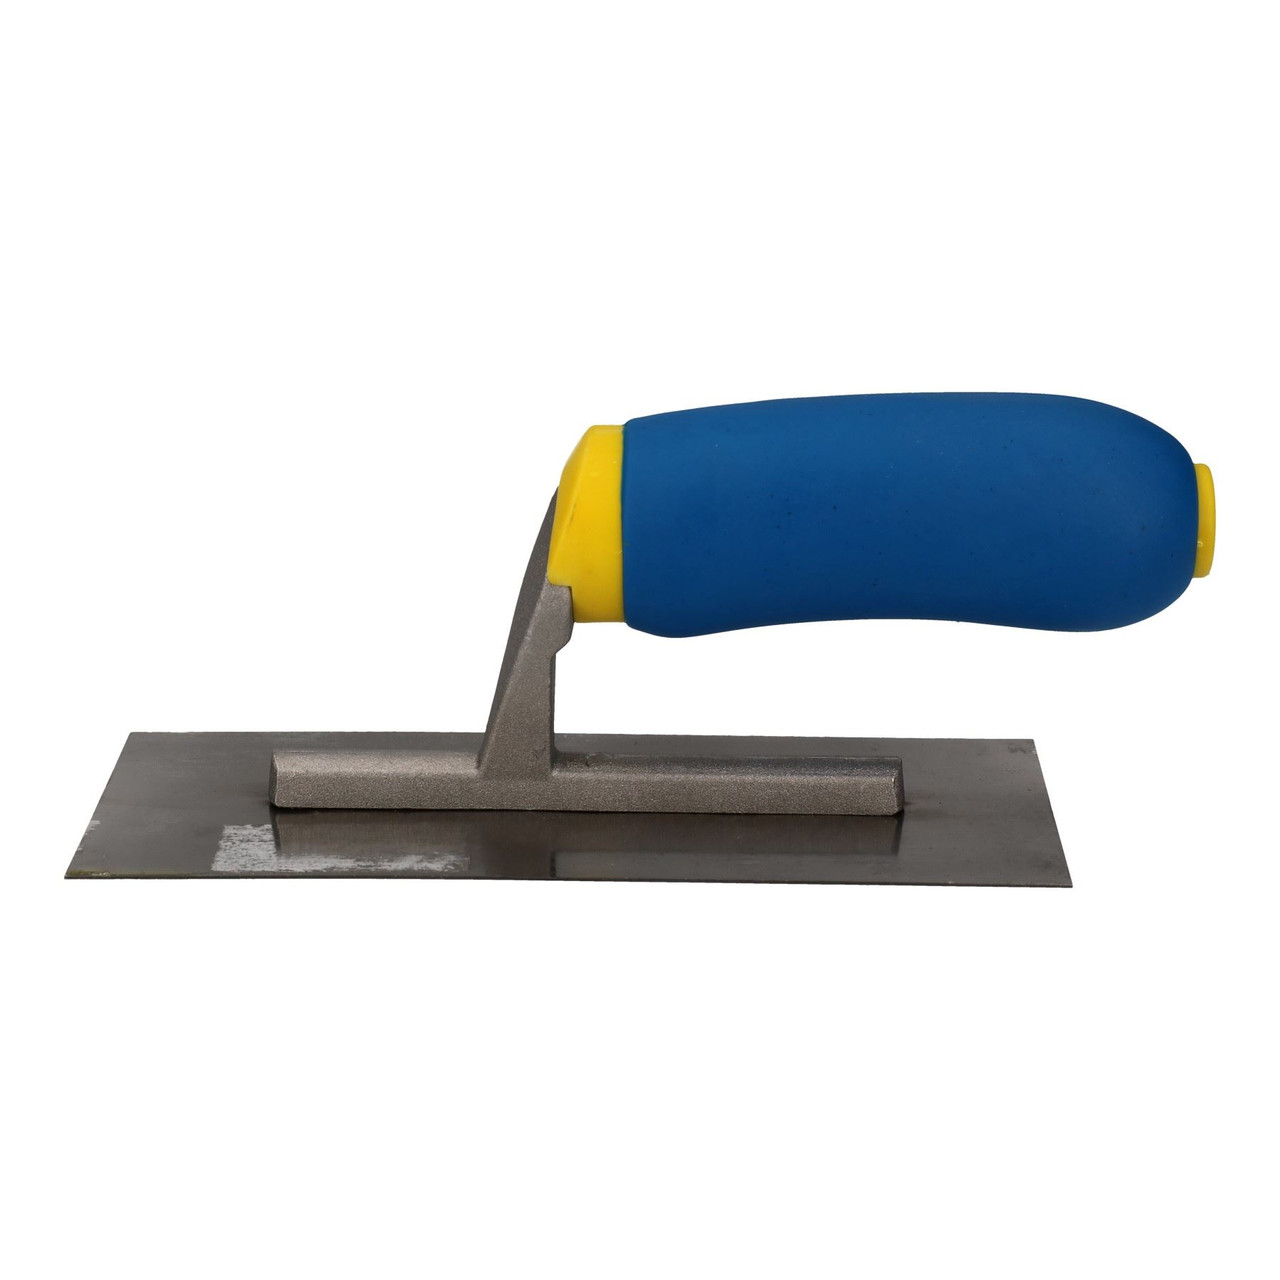 New 11" Plastering Trowel Soft Grip Plasterer Plaster Mortar Carbon Steel Blade 